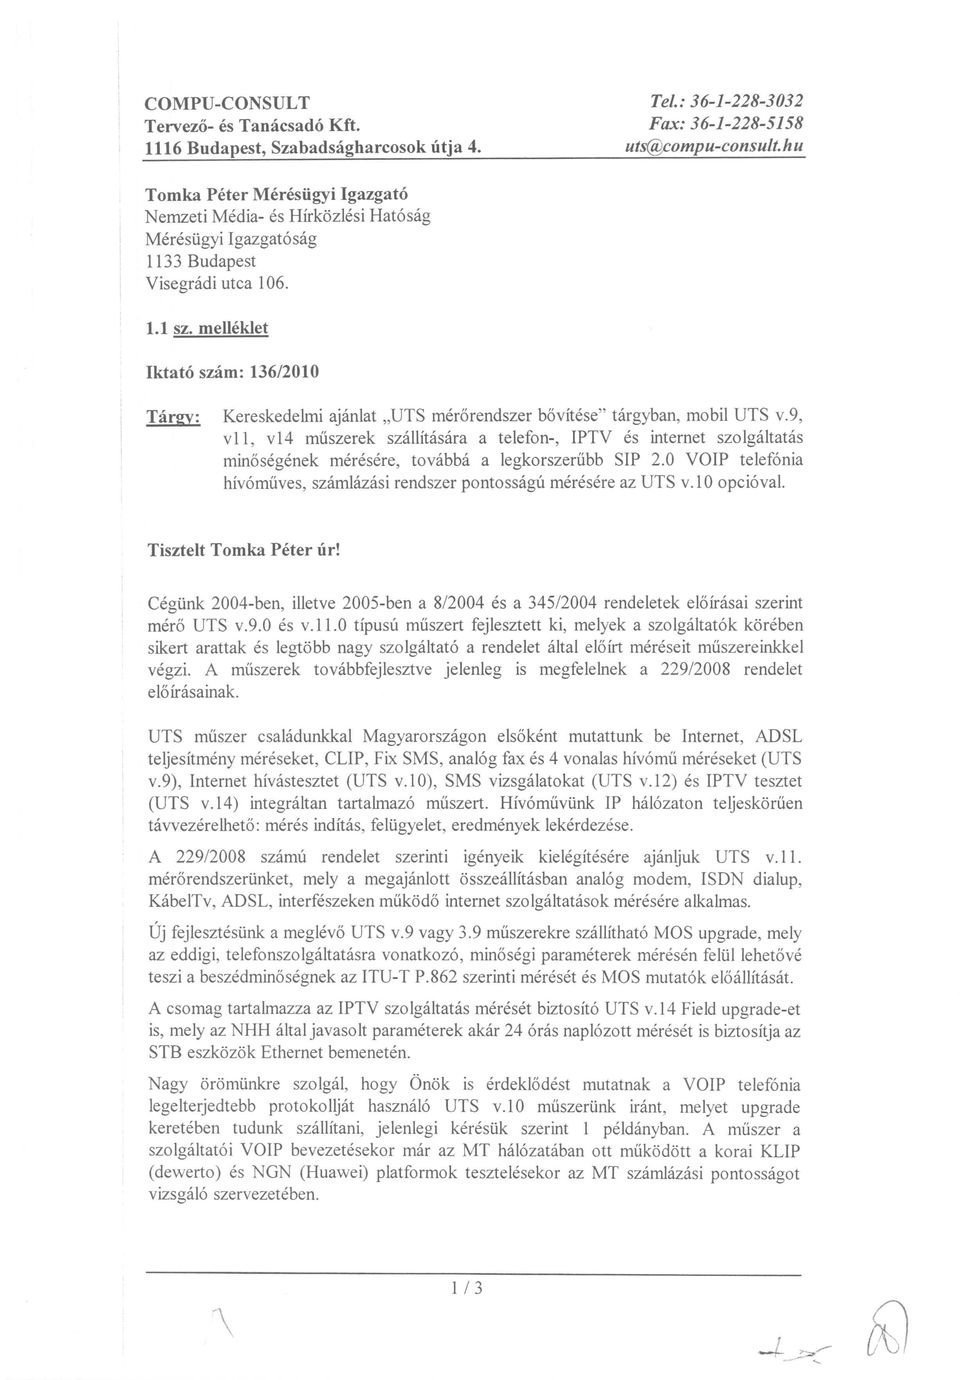 Targy: Kereskedelmi ajanlat "UTS merorendszer bovftese" targyban, mobil UTS v.